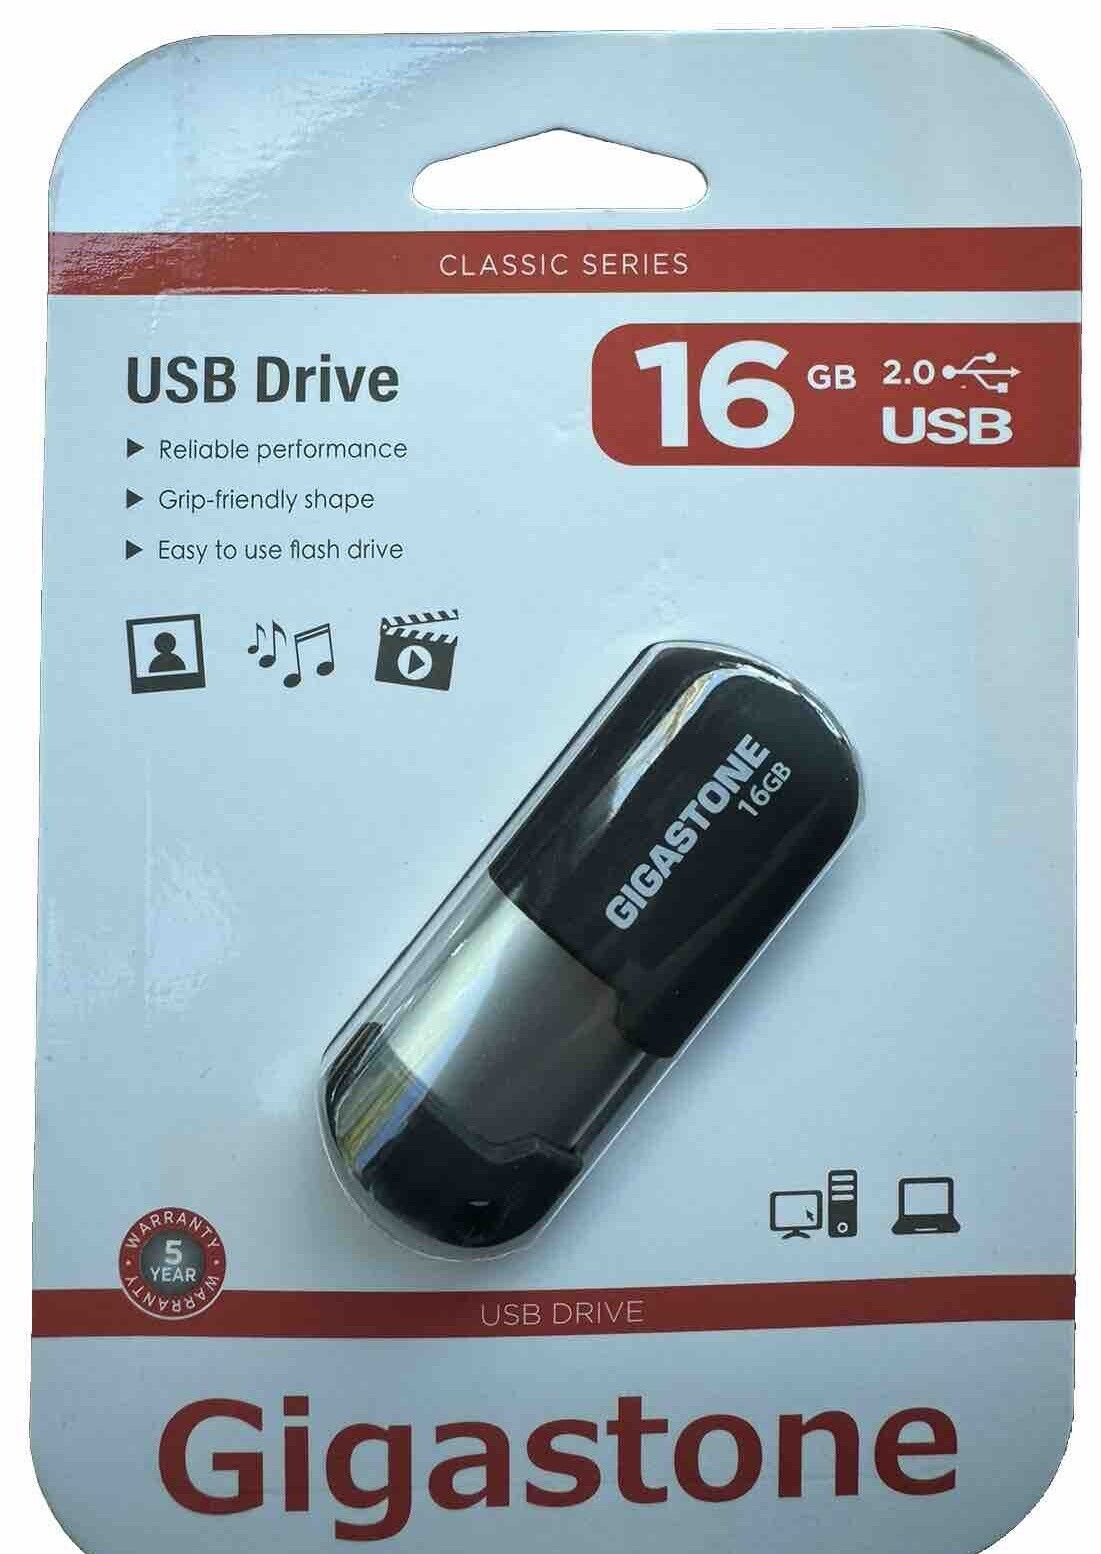 Gigastone 16GB USB Drive 2.0